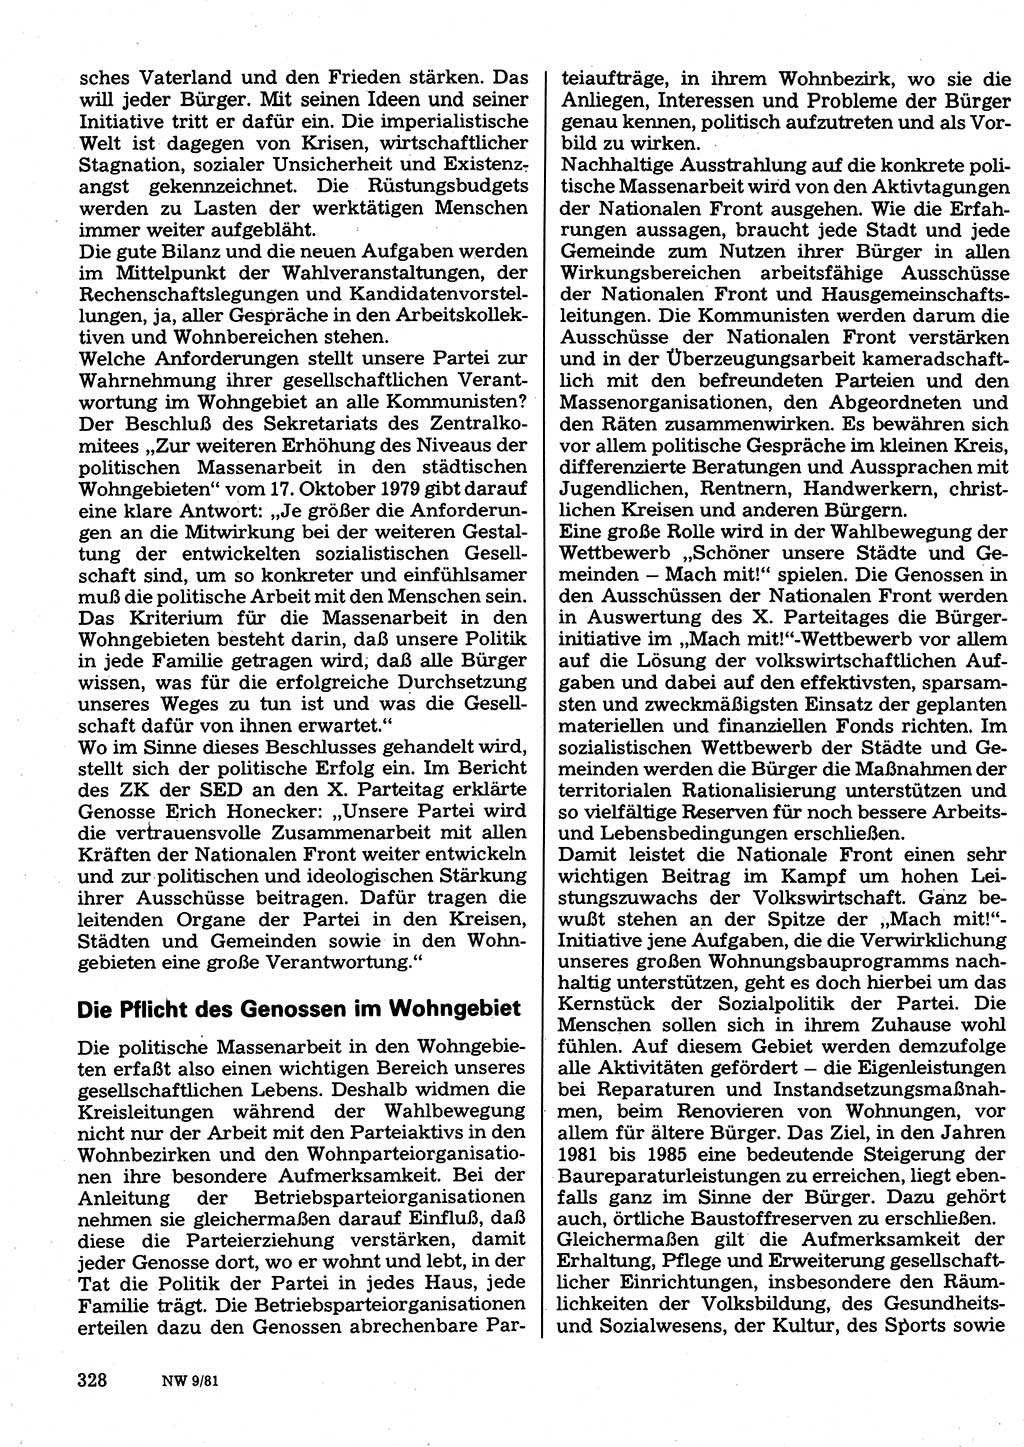 Neuer Weg (NW), Organ des Zentralkomitees (ZK) der SED (Sozialistische Einheitspartei Deutschlands) für Fragen des Parteilebens, 36. Jahrgang [Deutsche Demokratische Republik (DDR)] 1981, Seite 328 (NW ZK SED DDR 1981, S. 328)